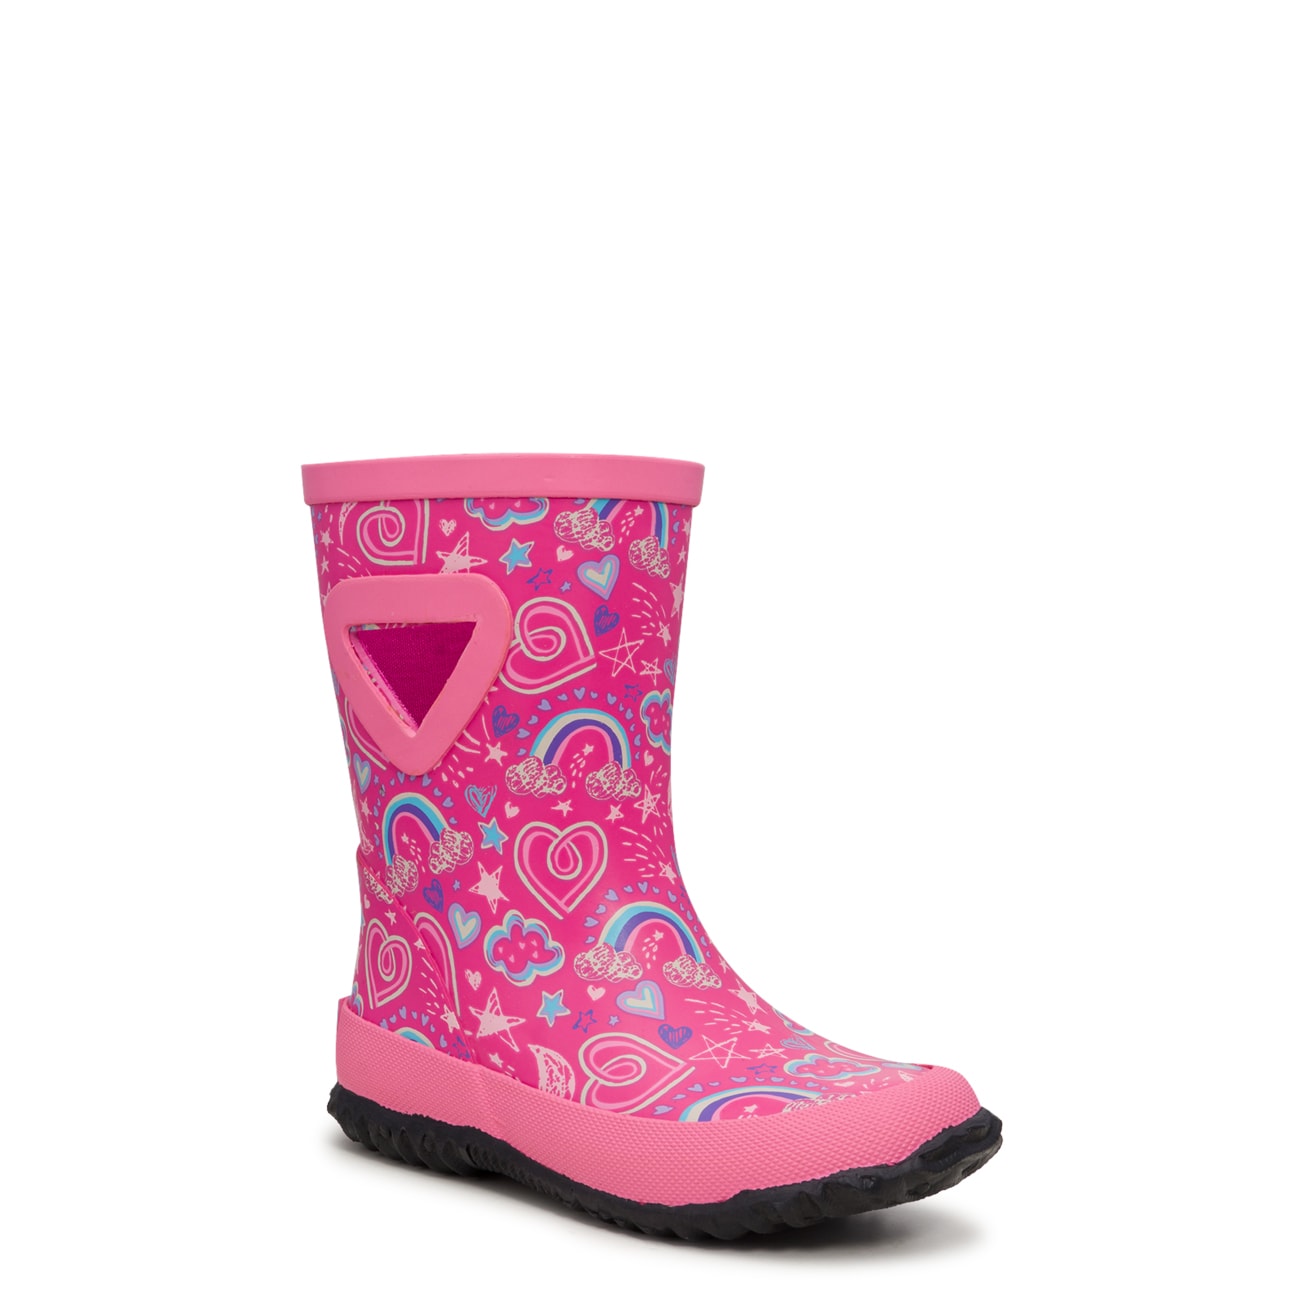 Toddler Girls' Twisty Heart Waterproof Rain Boot